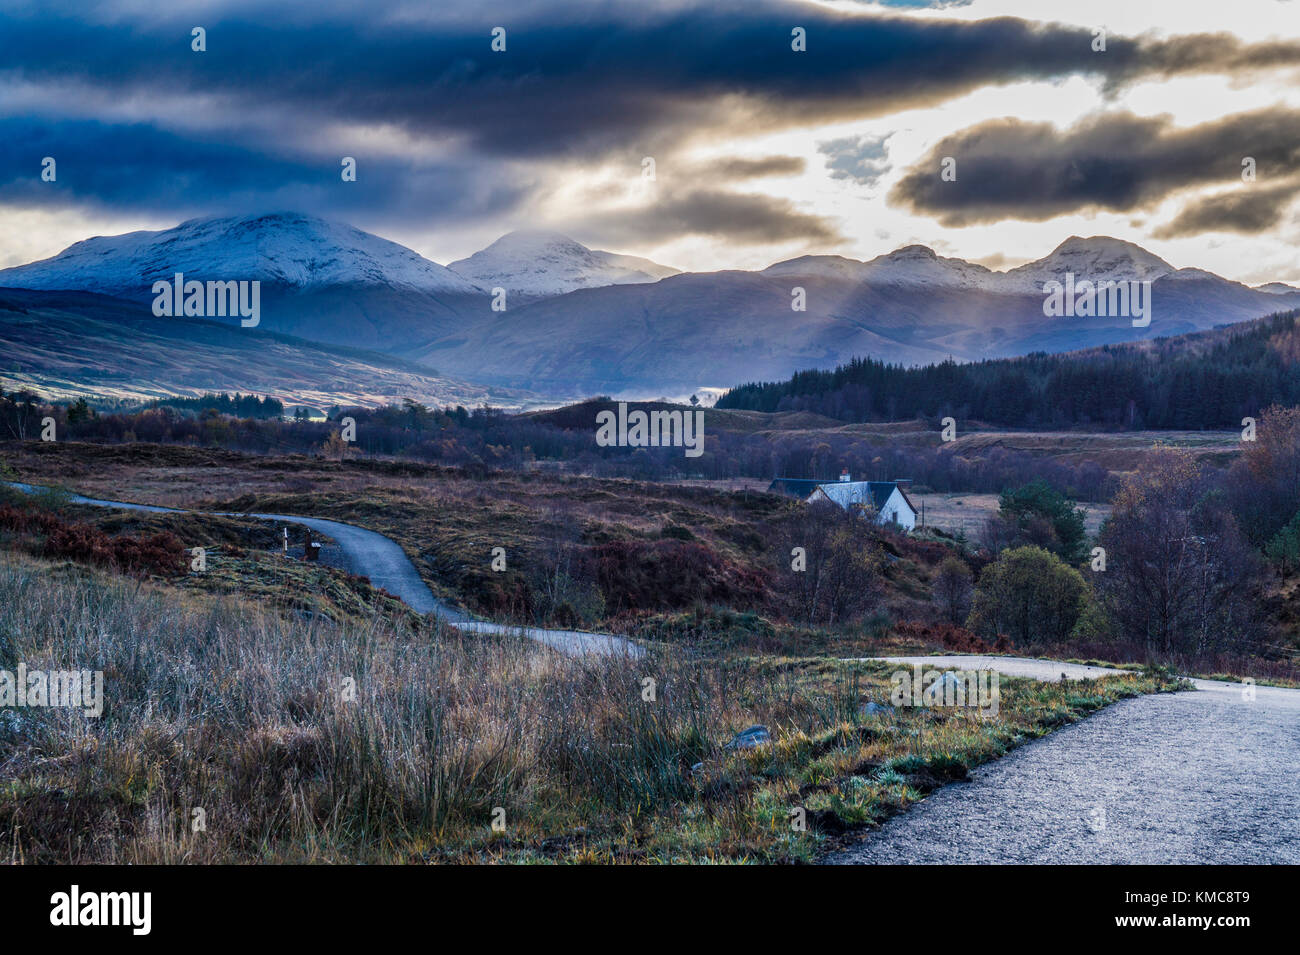 La vista a sud da circa Dalrigh, appena a sud di Tyndrum. Come il sole sorge su colline Crianlarich - Ben più, Stob Binnein e Cruach Ardrain. Foto Stock